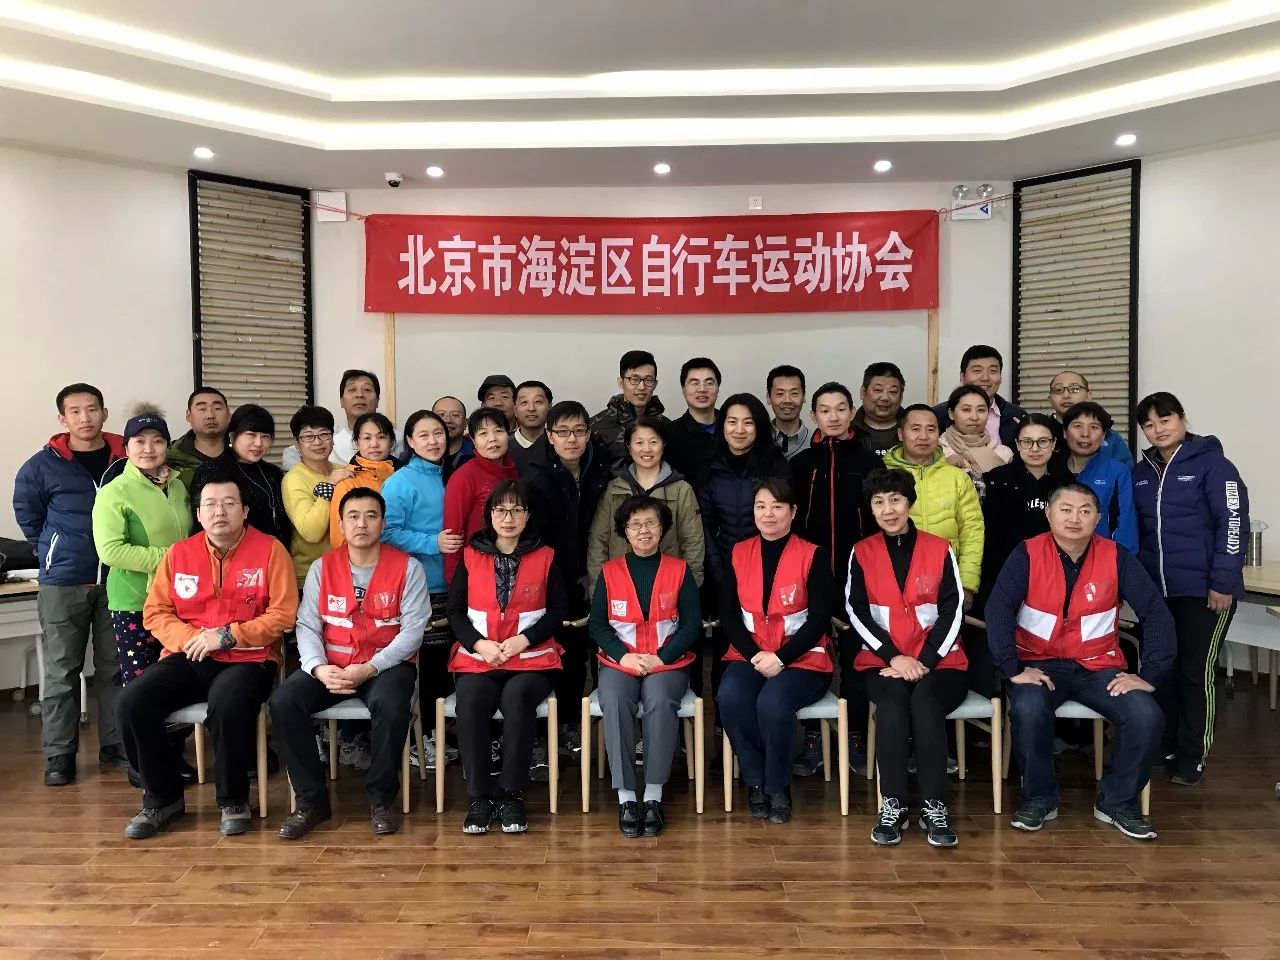 北京市海淀區腳踏車運動協會第一期急救培訓師生合影